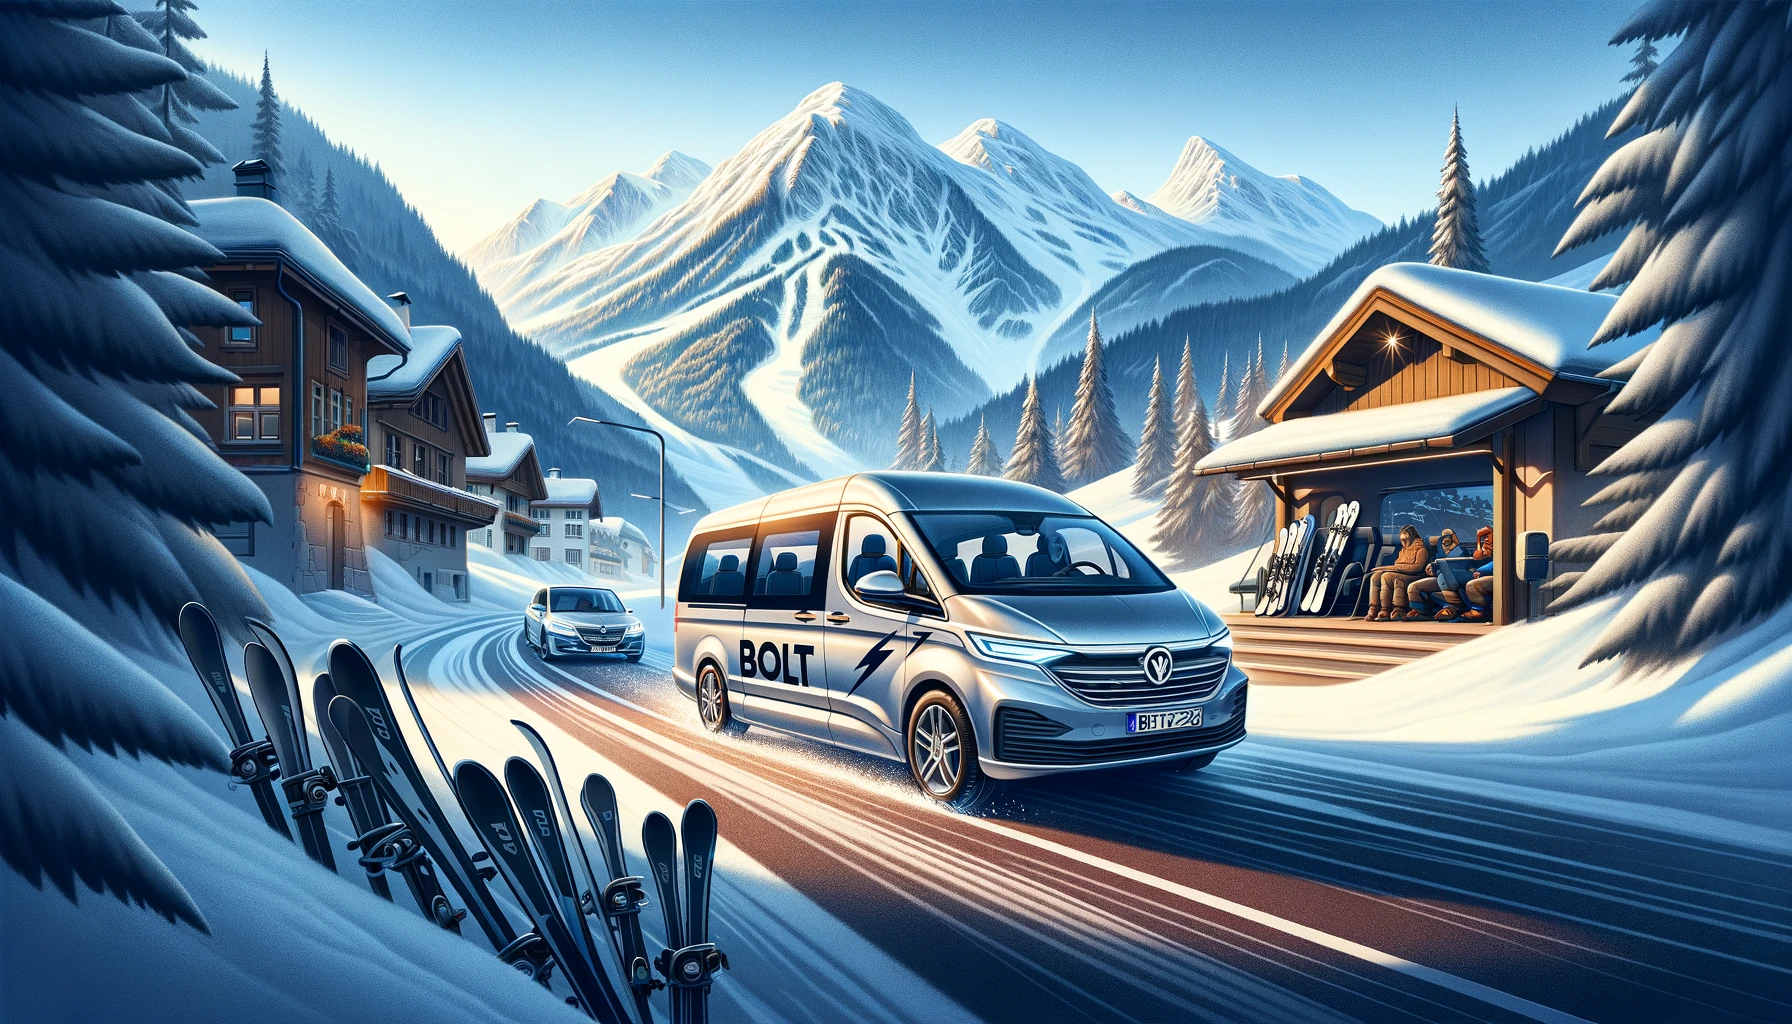 Bolt Lance un Service de Navette vers les Stations de Ski Alpines